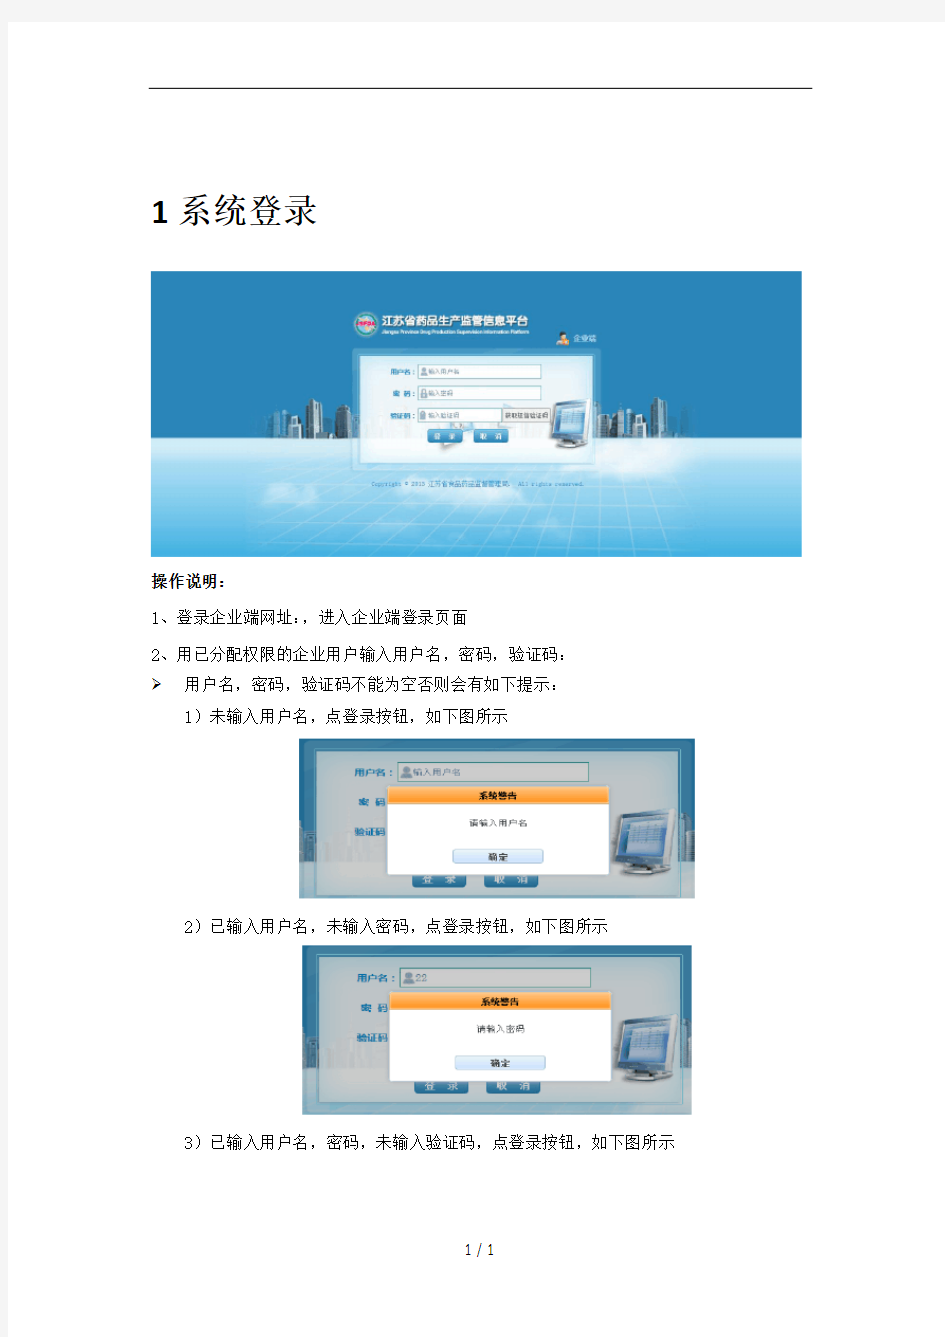 江苏省药品生产监管信息平台(企业端)操作手册